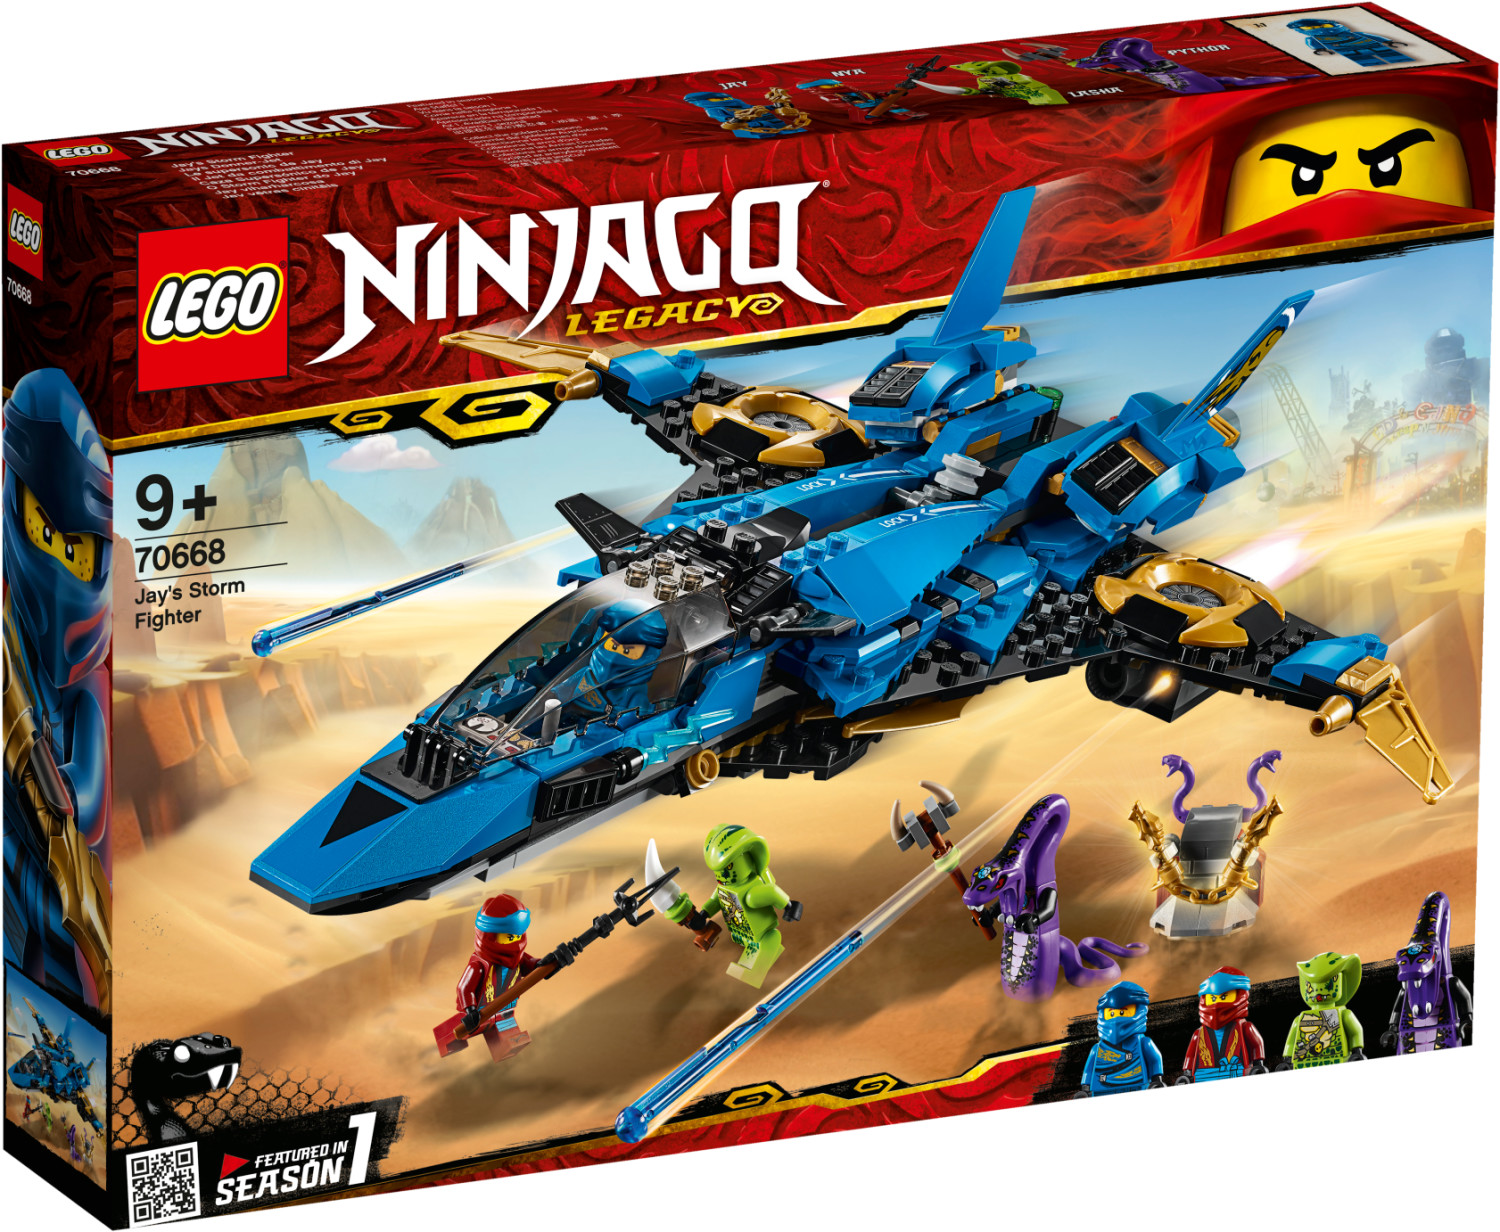 LEGO Juniors - Le temple perdu Ninjago (10725) au meilleur prix